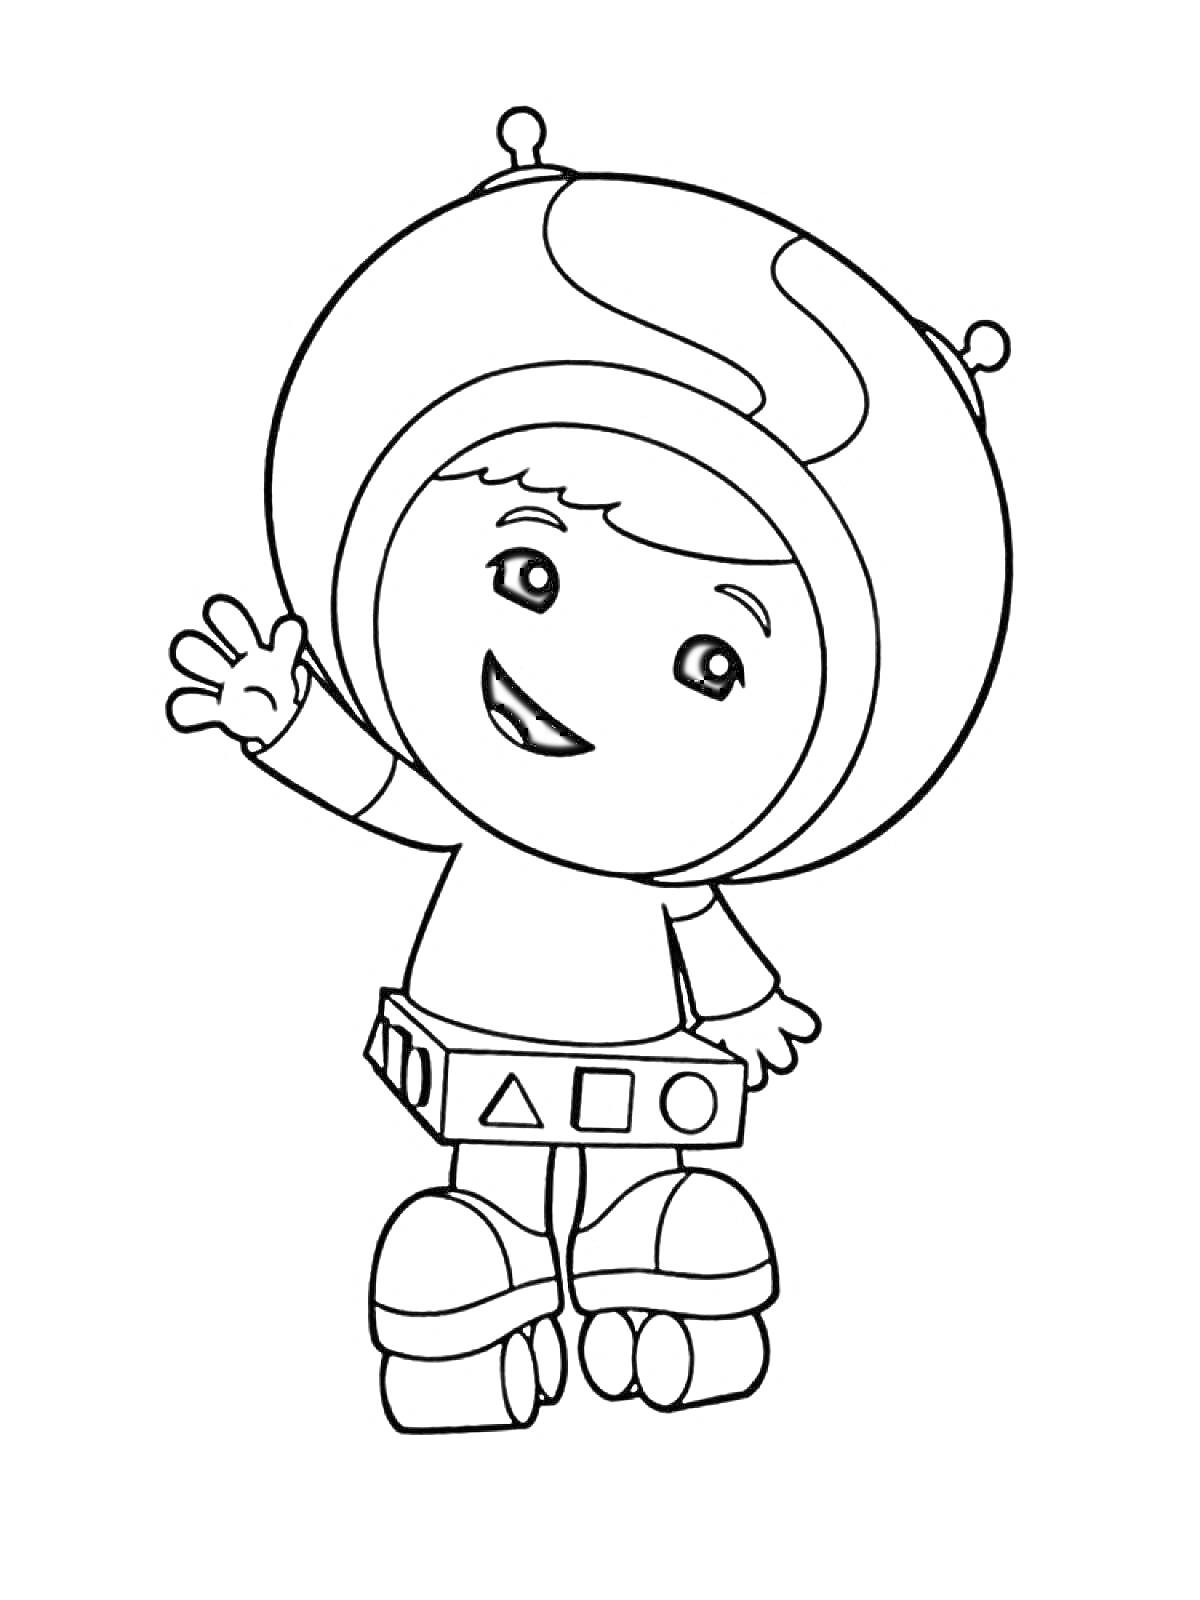 Ребёнок в шлеме с антеннами, костюм с геометрическими фигурами, приветственное махание рукой.